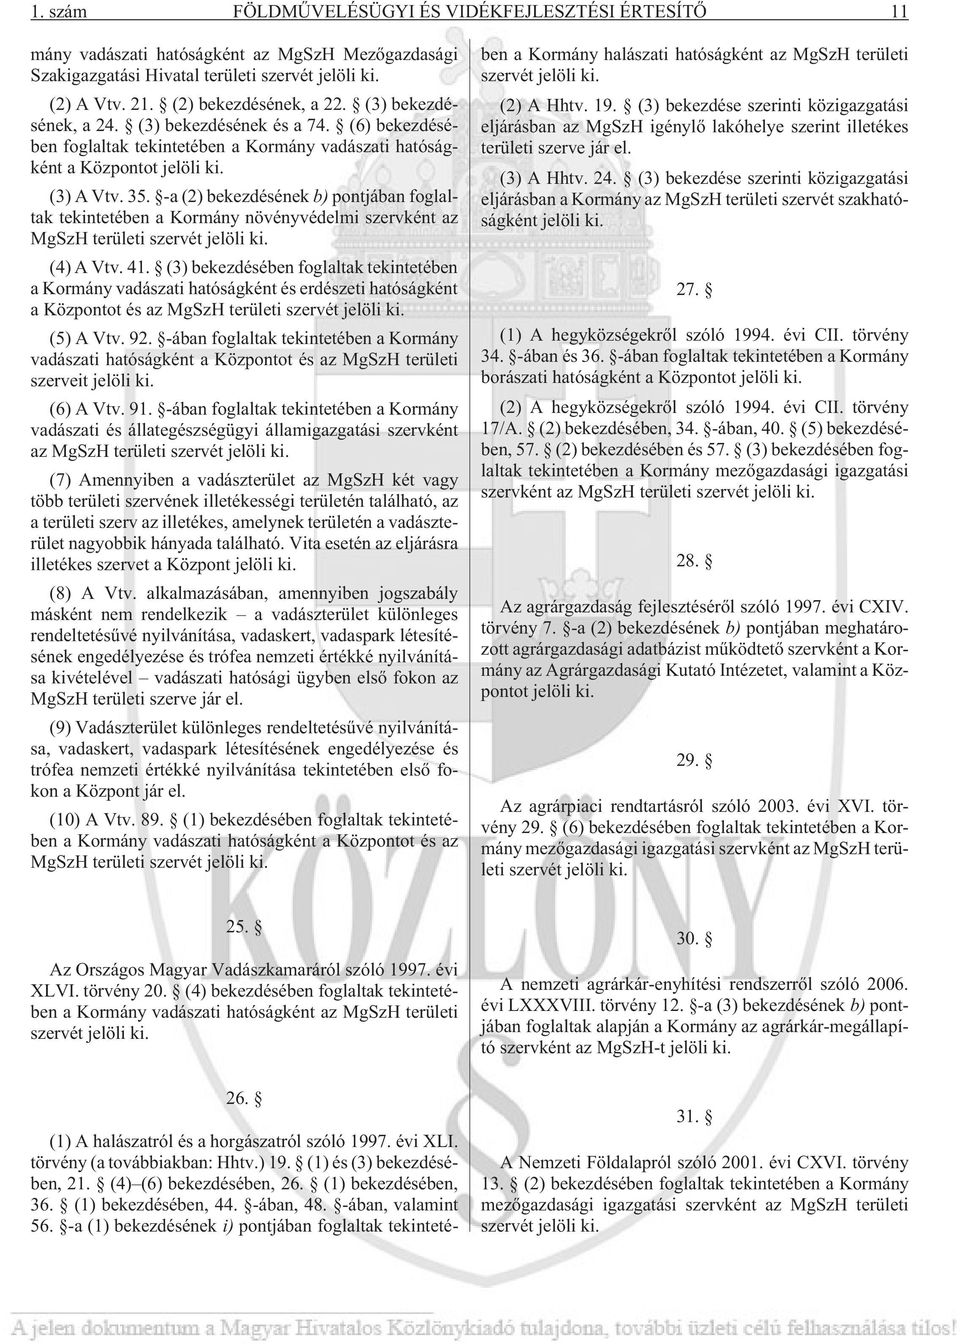 -a (2) bekezdésének b) pontjában foglaltak tekintetében a Kormány növényvédelmi szervként az MgSzH területi szervét jelöli ki. (4) A Vtv. 41.